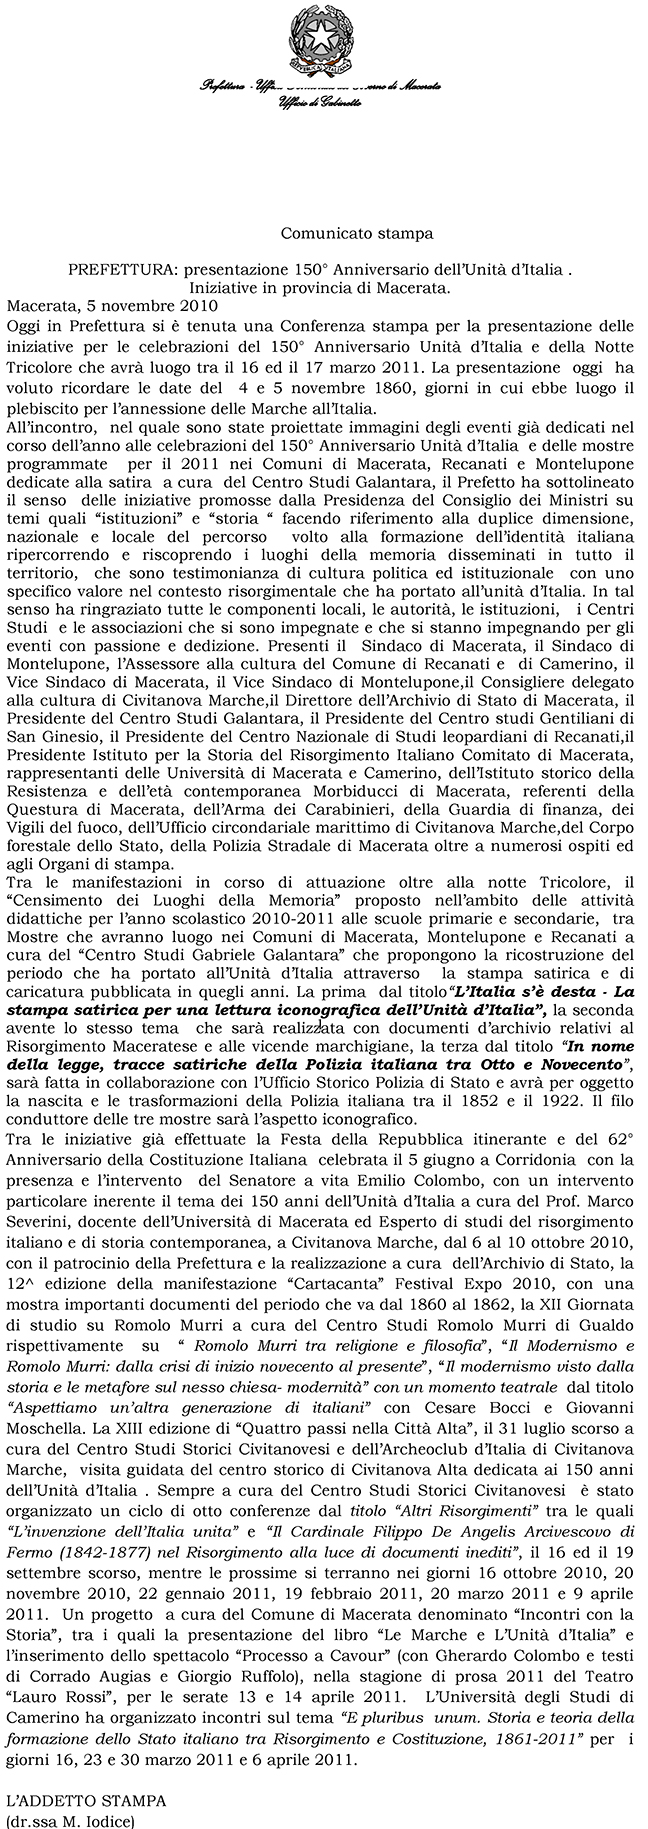 Comunicato stampa della Prefettura di Macerata a presentazione delle iniziative nella Provincia di Macerata